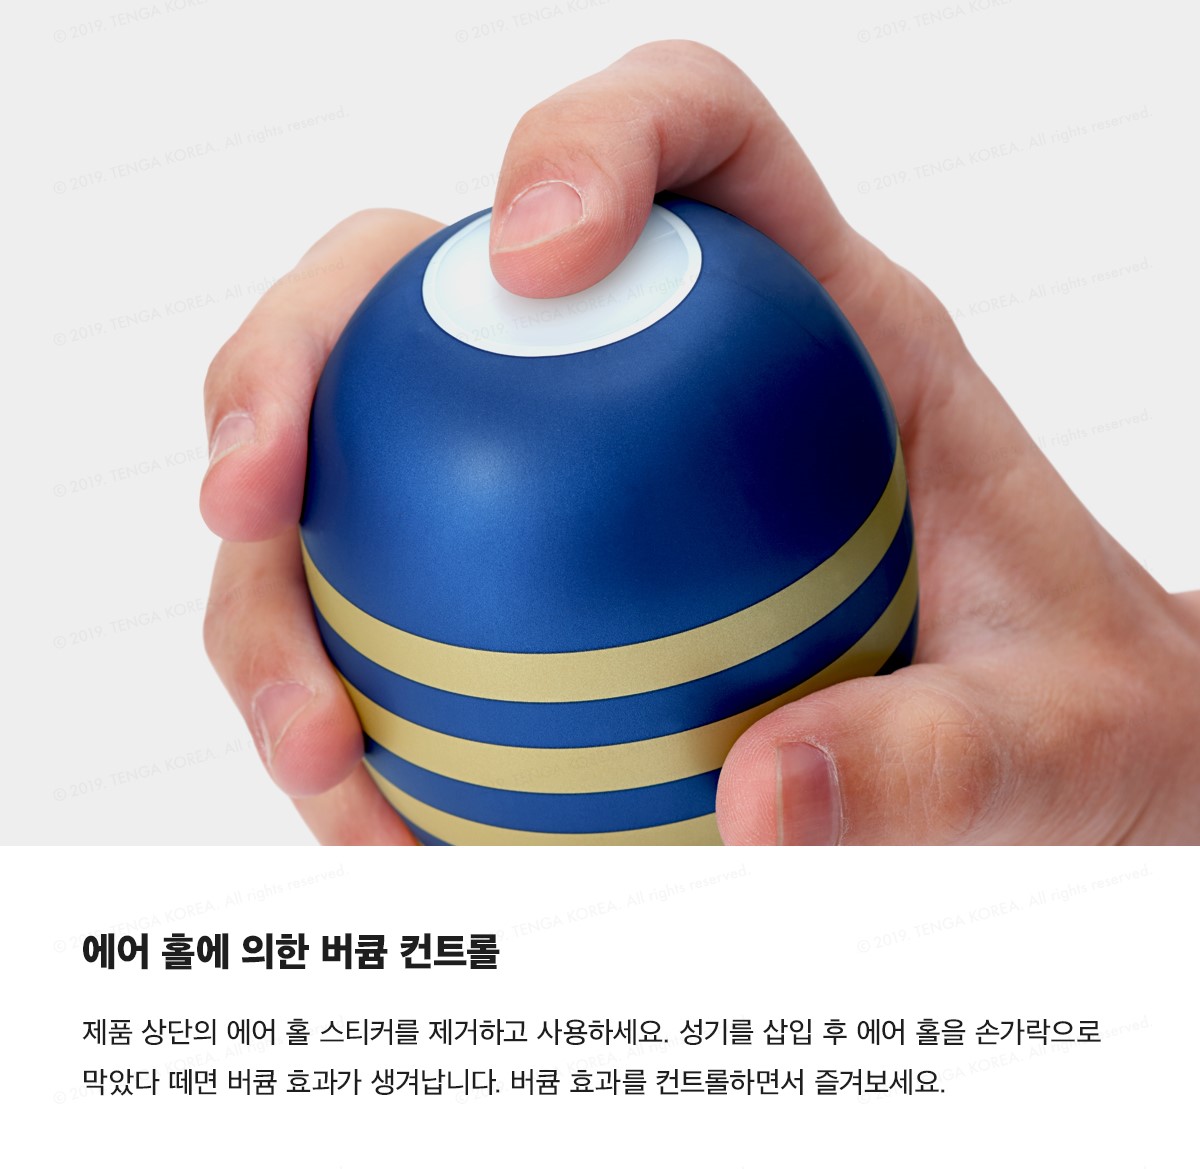 프리미엄 텐가 오리지널 버큠 컵 젠틀 PREMIUM TENGA ORIGINAL VACUUM CUP GENTLE